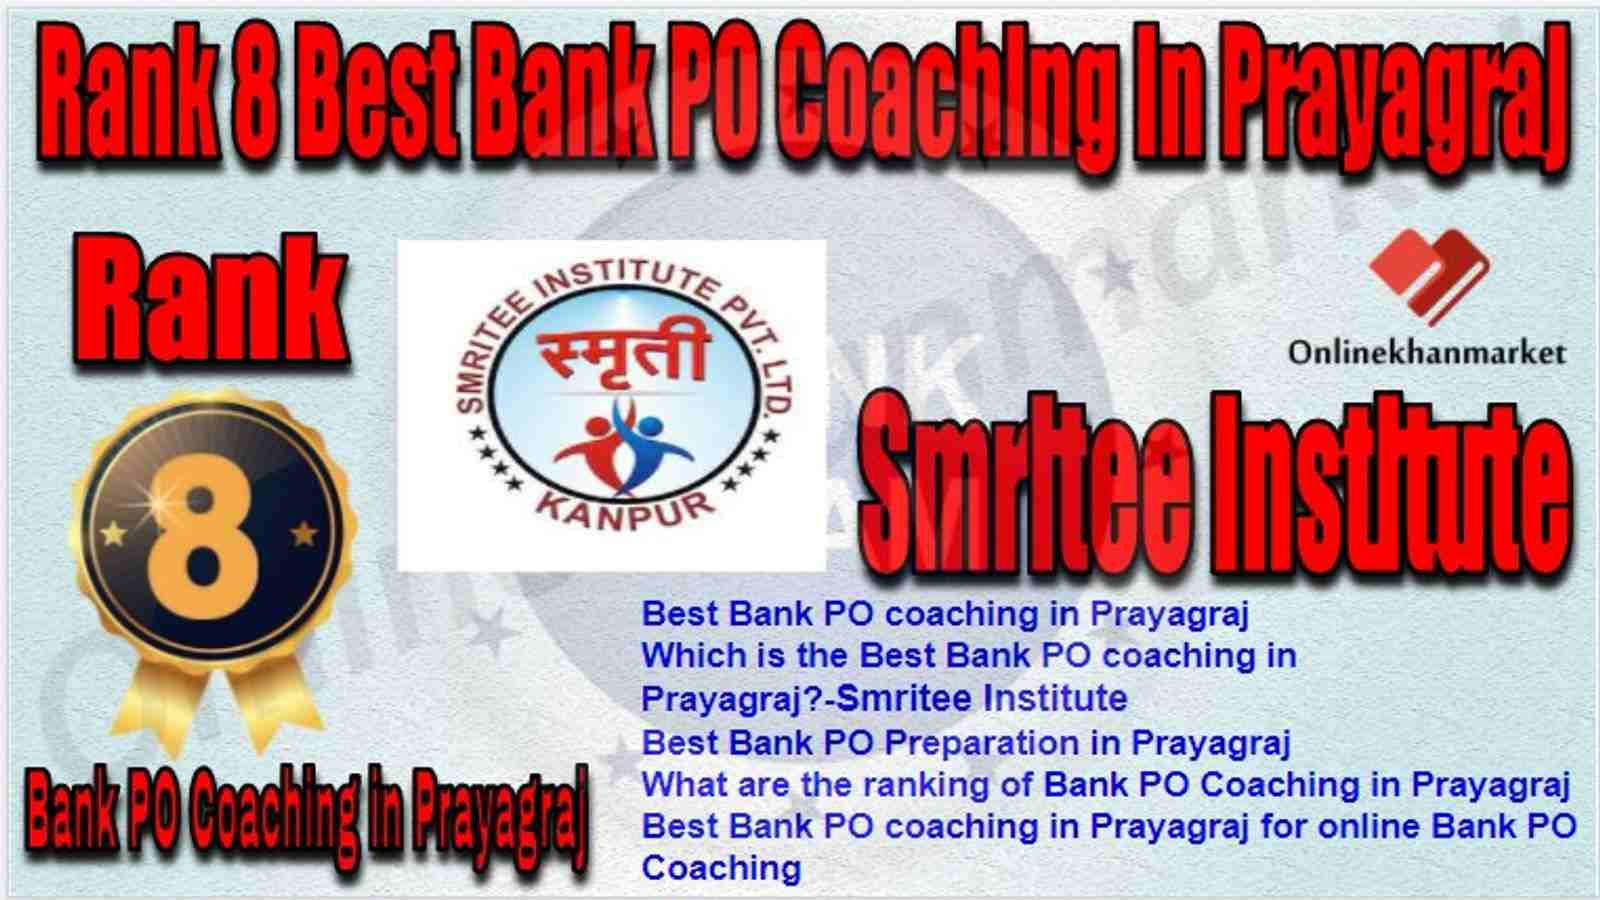 Rank 8 Best Bank PO Coaching in prayagraj